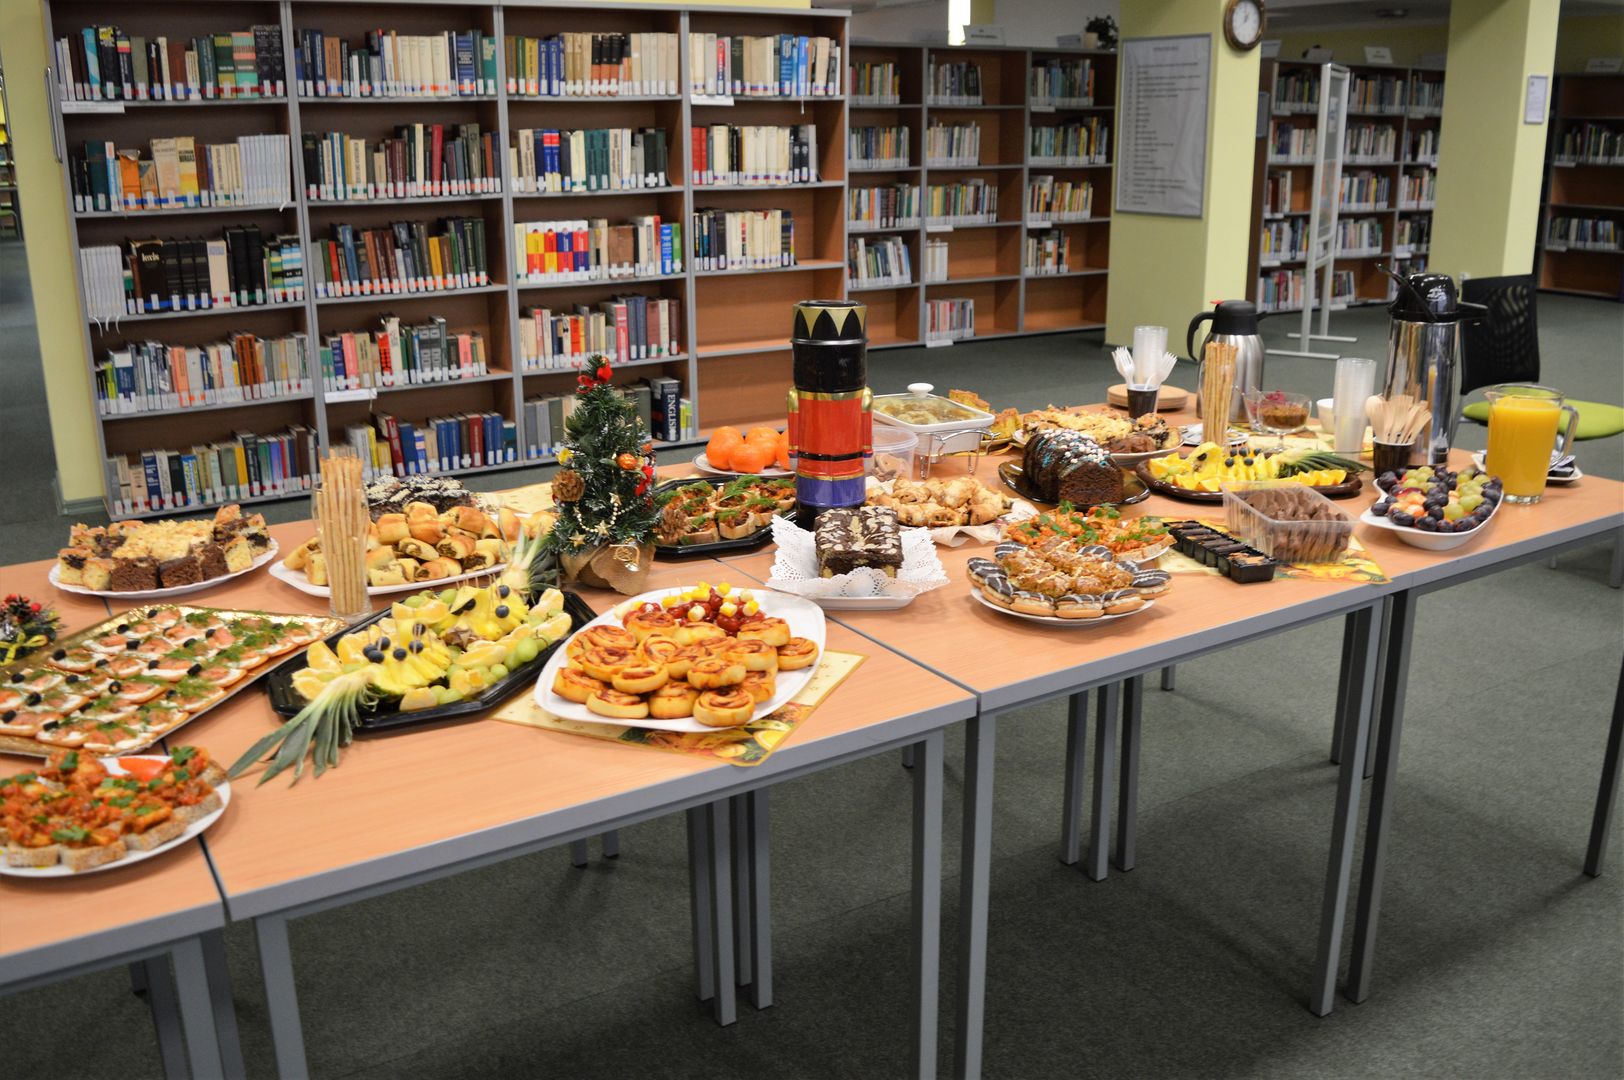 Udekorowany świątecznie stół z potrawami przygotowanymi przez pracowników Biblioteki Głównej z okazji spotkania świątecznego